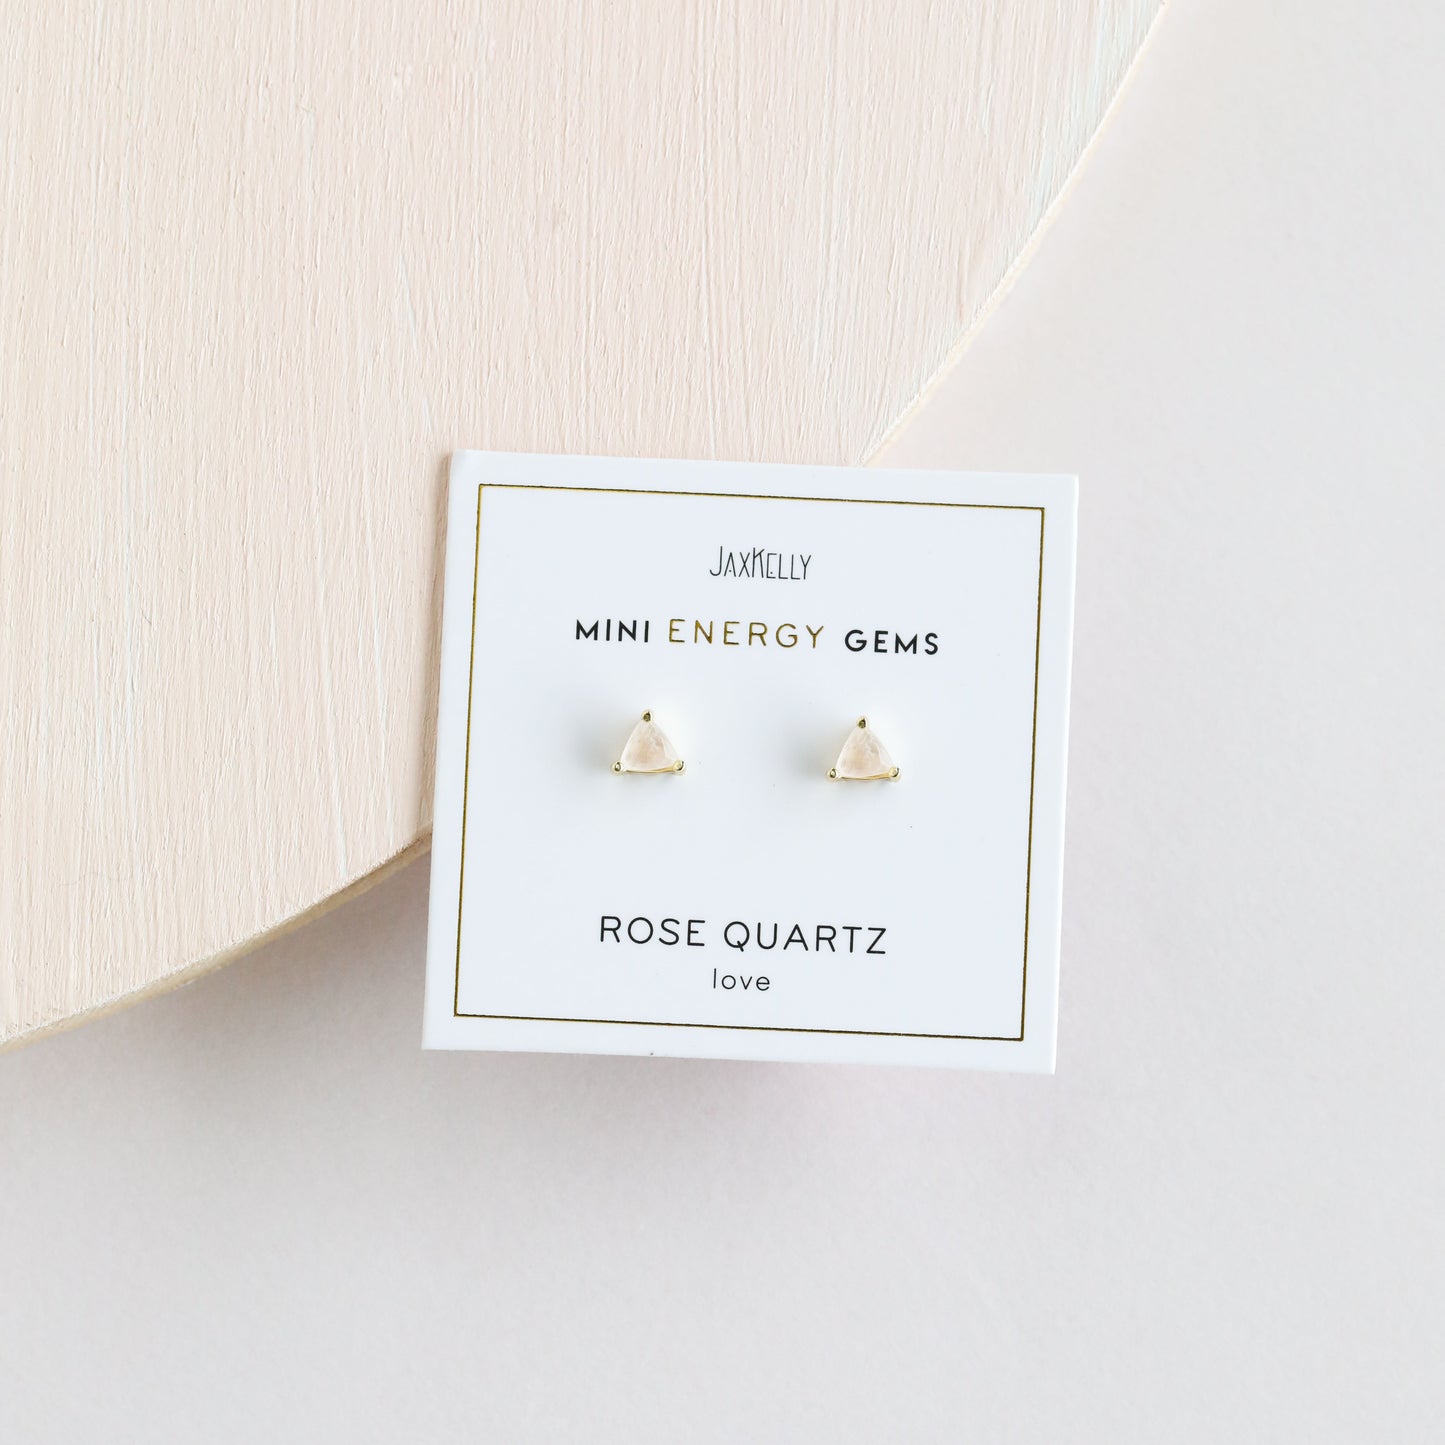 Rose Quartz Mini Energy Gems - Love